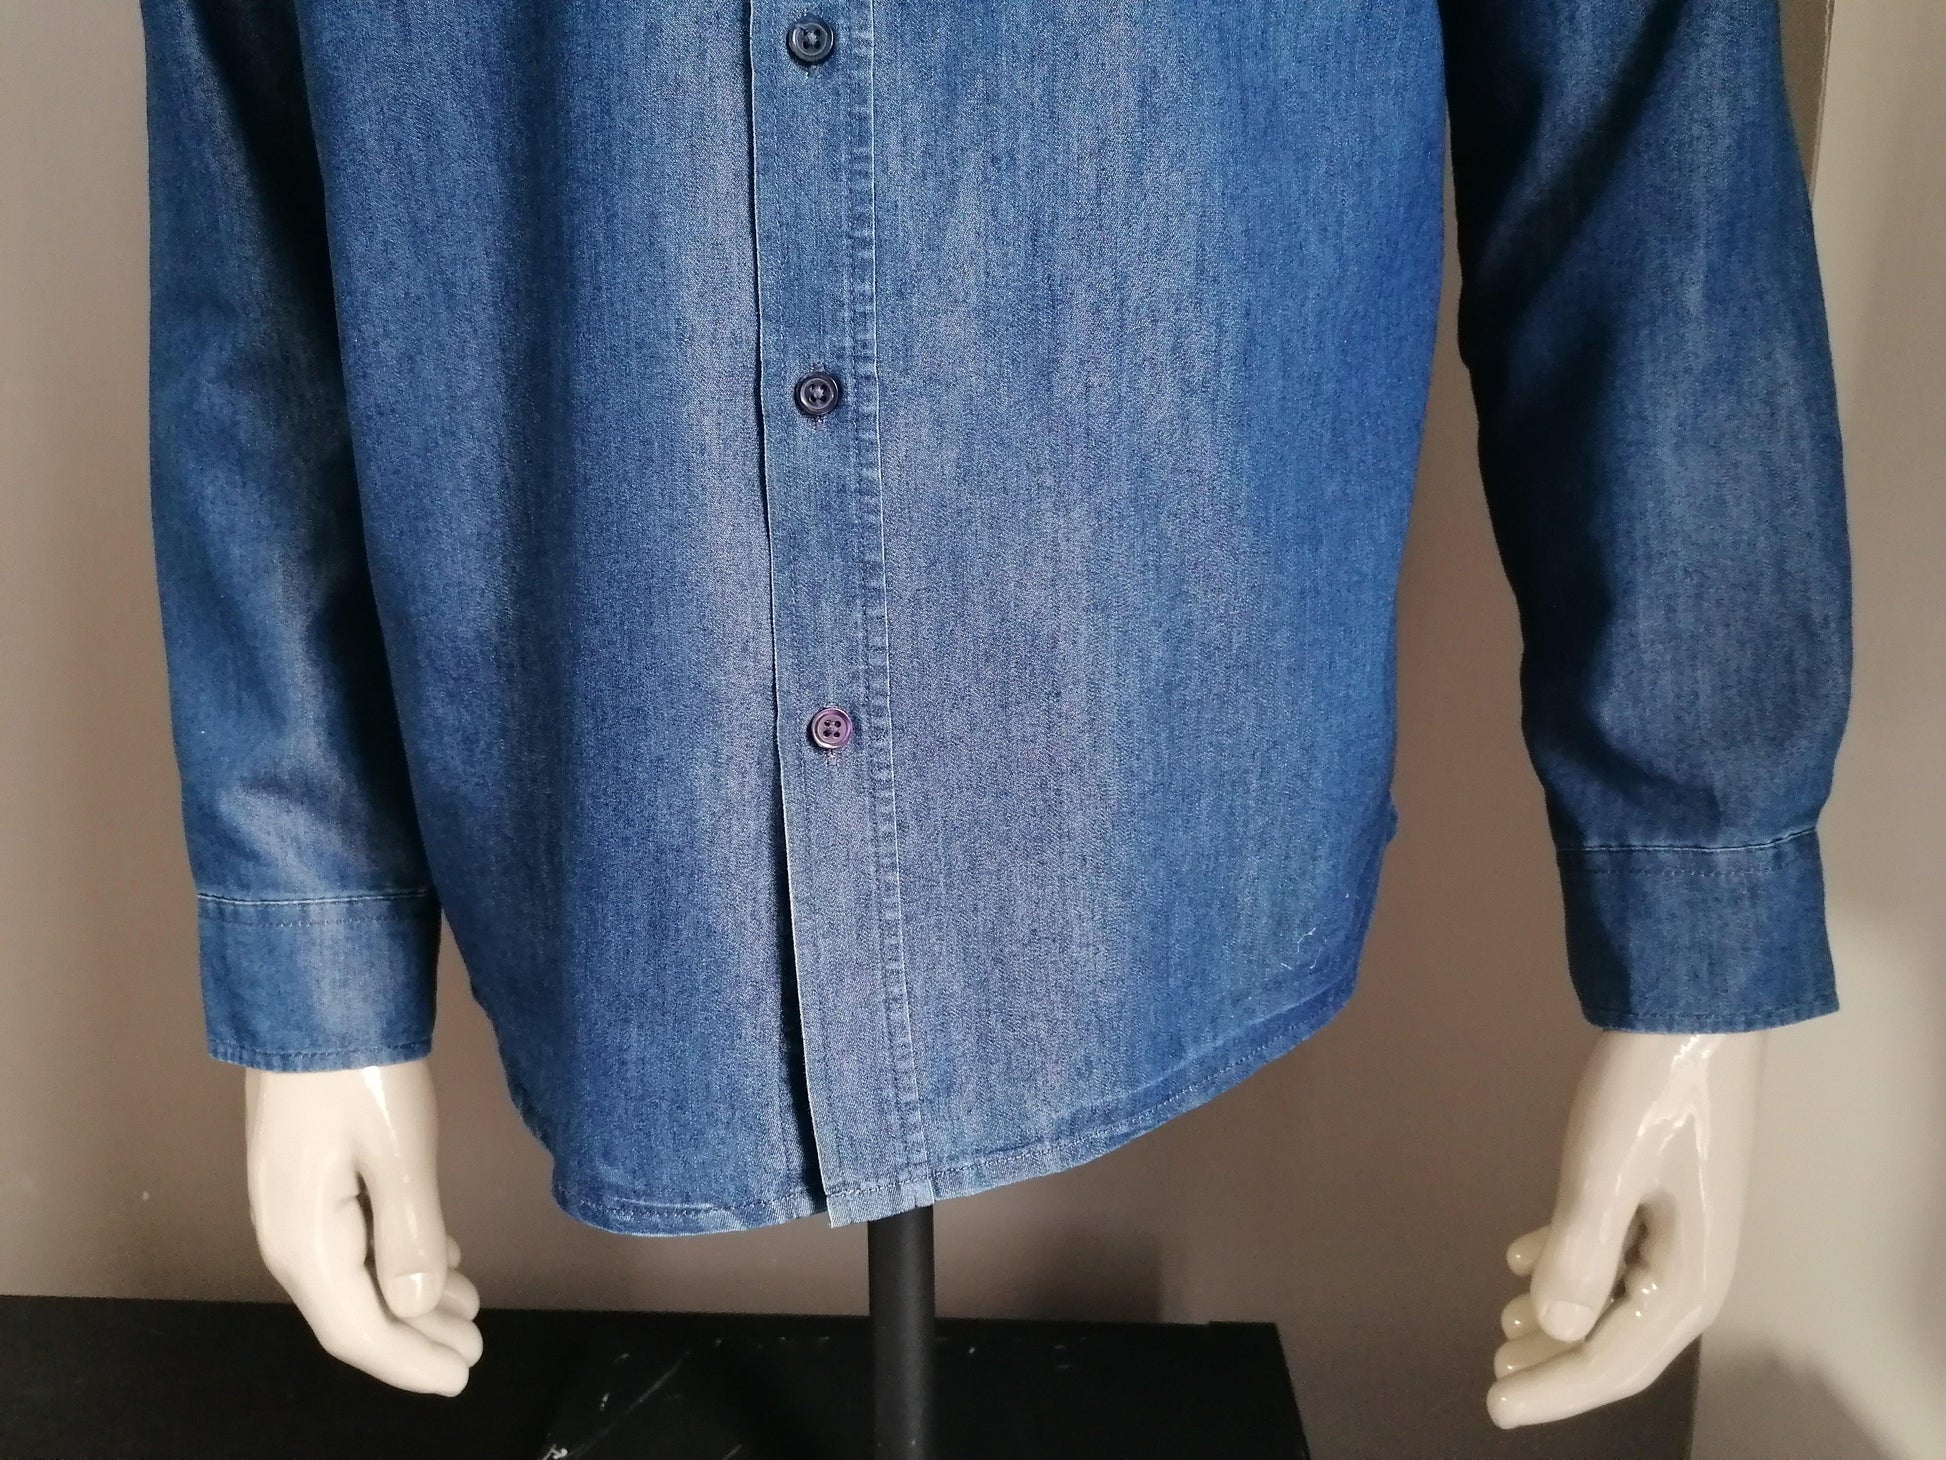 Camargue overhemd. spijkerstof look. Blauw gekleurd. Maat L. - EcoGents